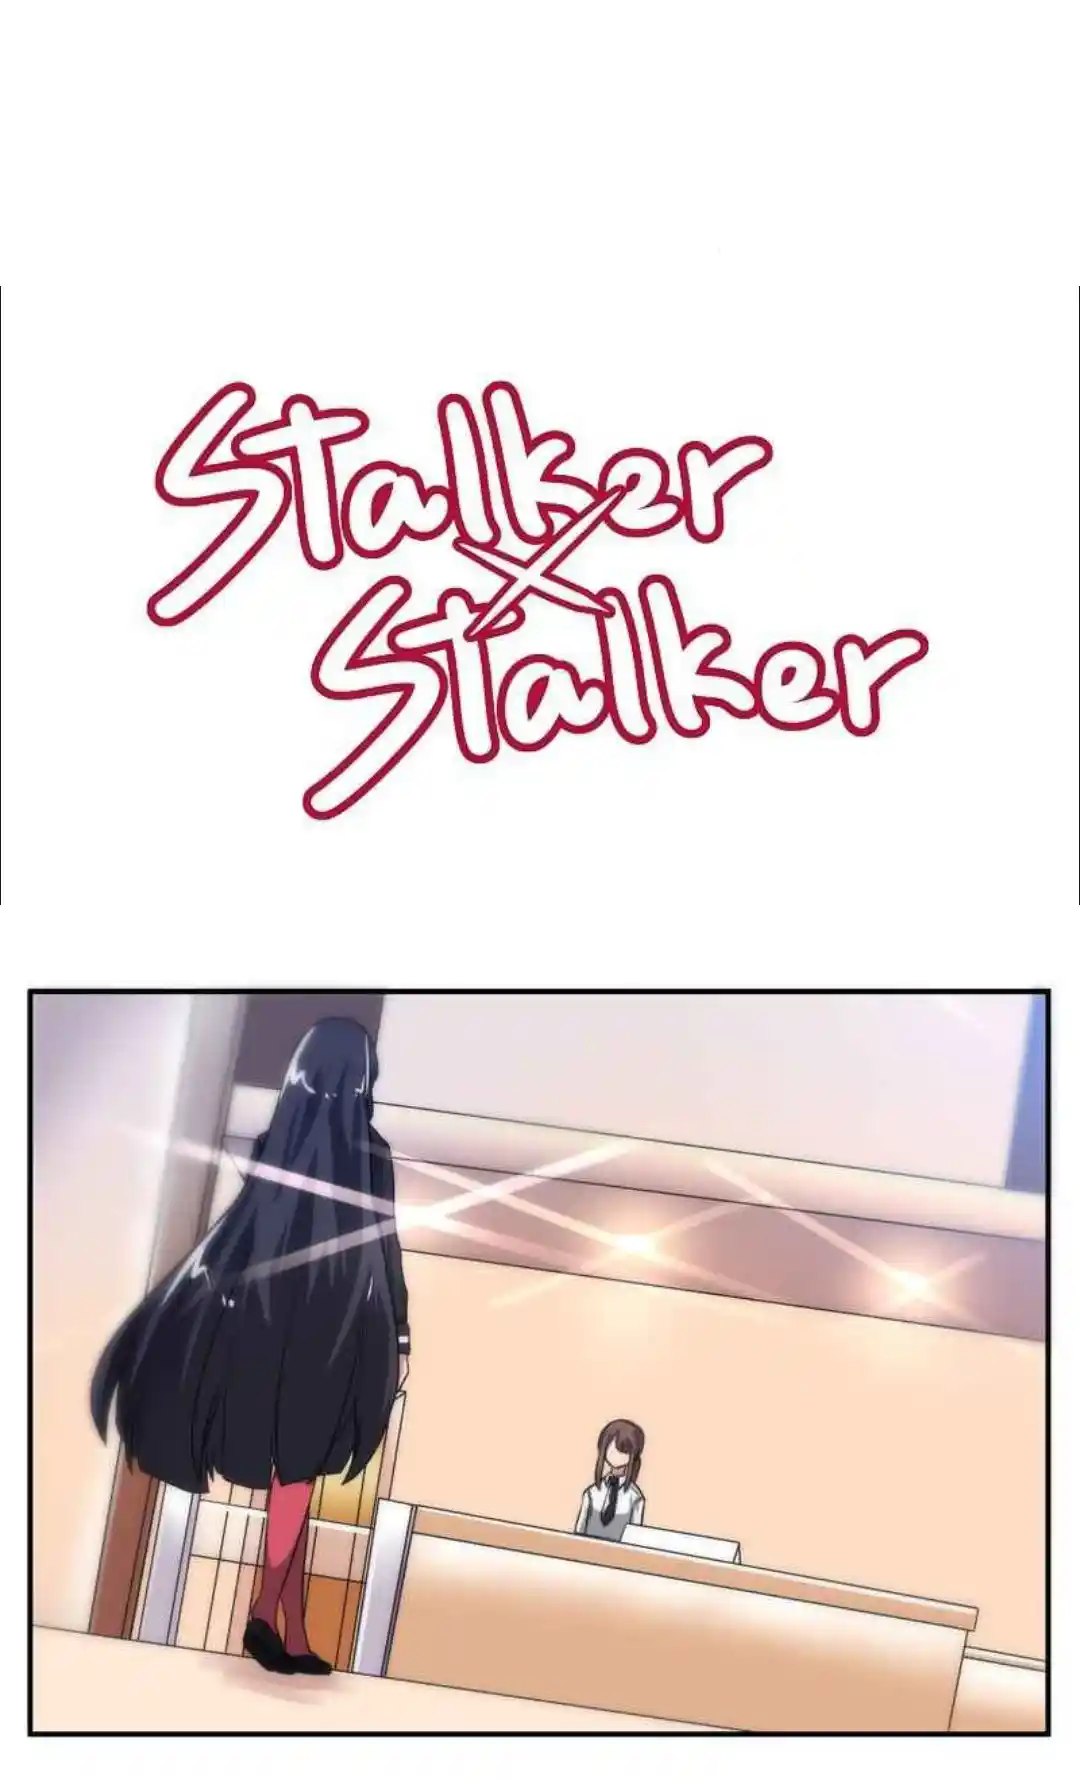 Stalker X Stalker: Chapter 87 - Page 1